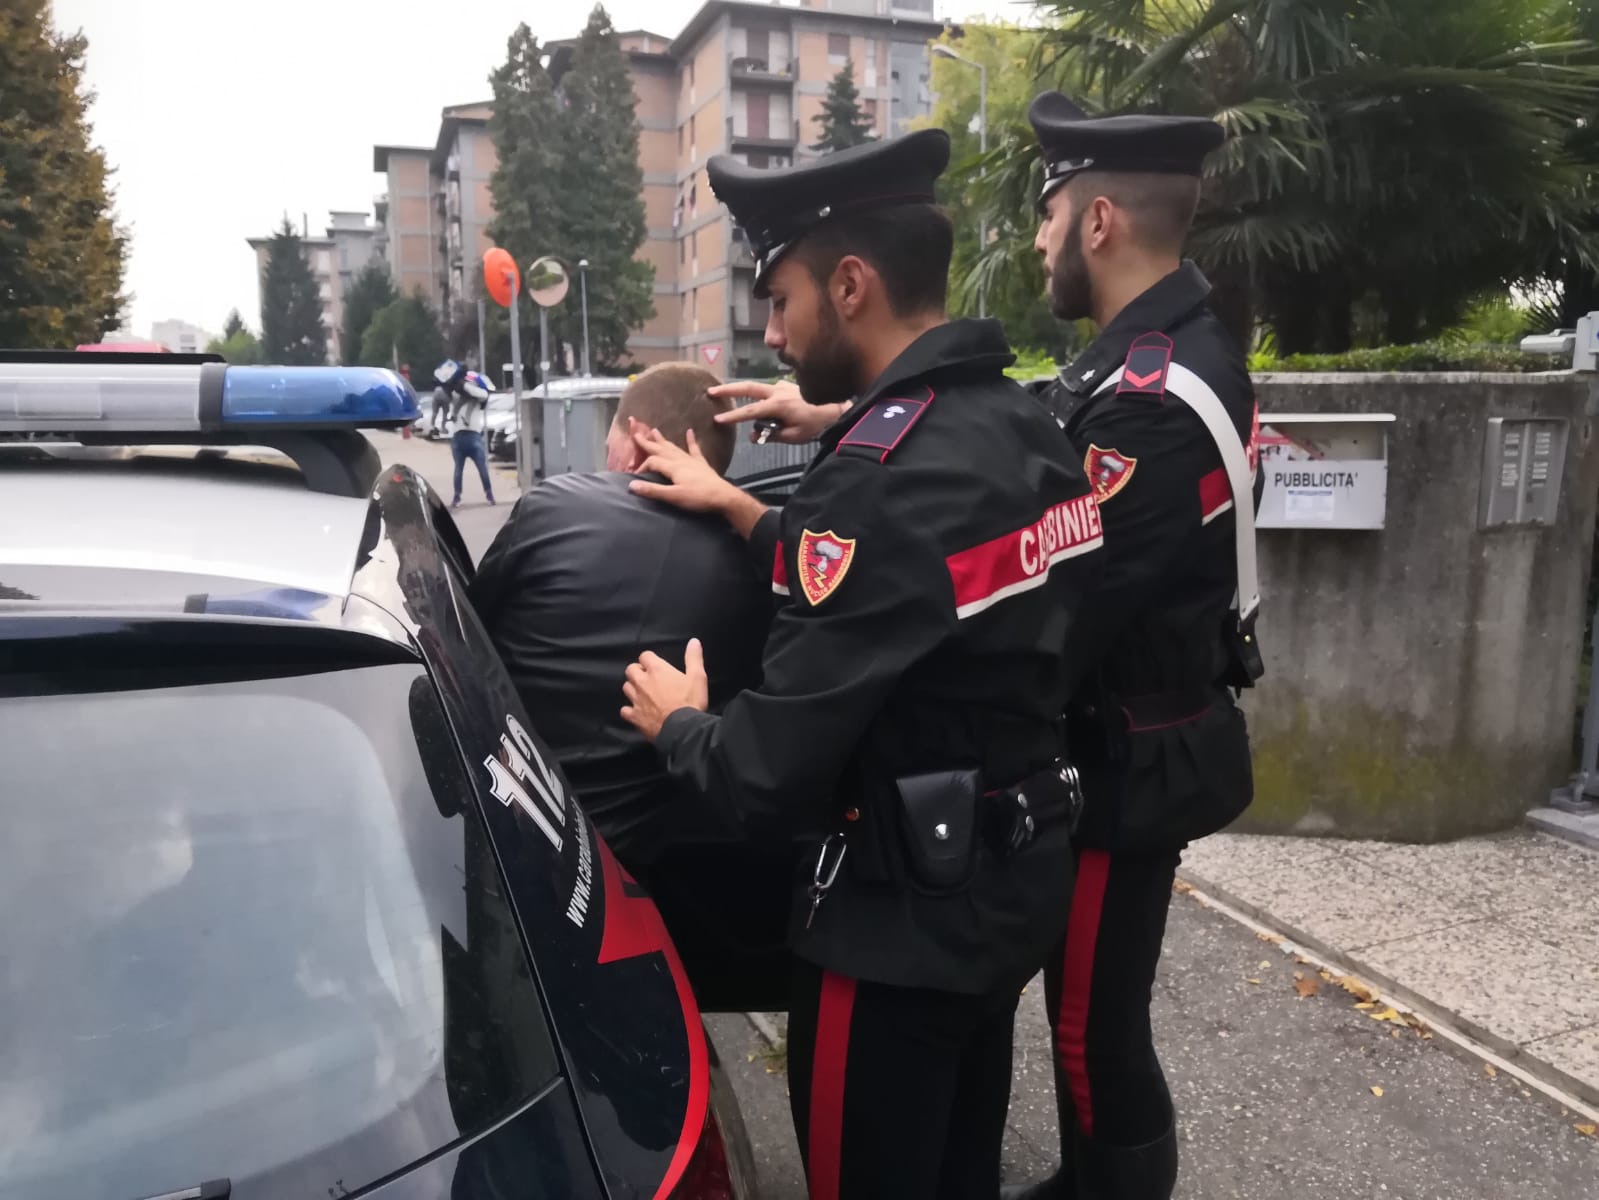 Rientra in Italia dopo essere stato estradato: arrestato